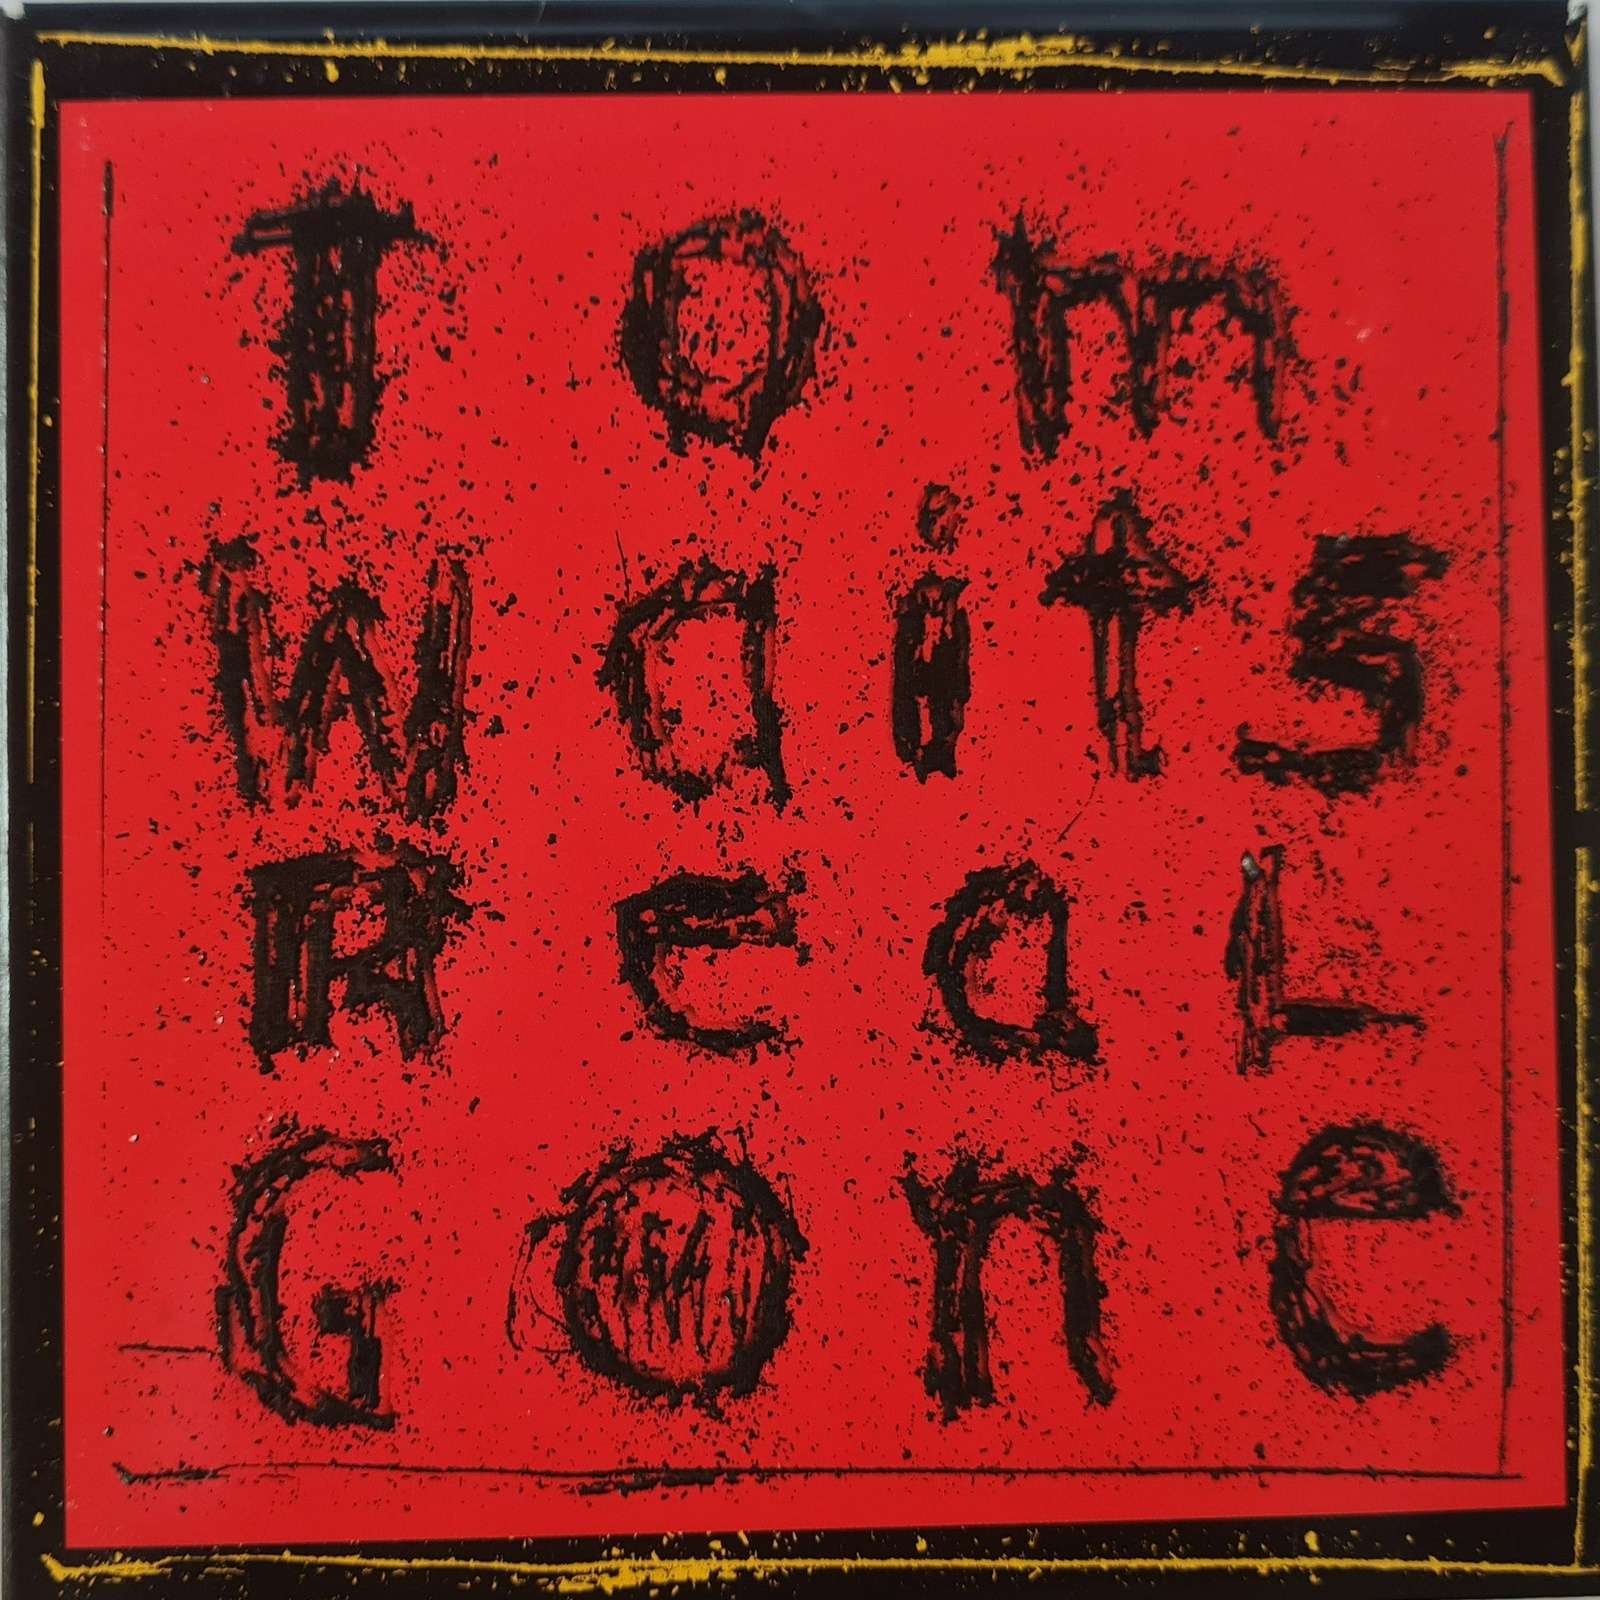 Tom Waits - Real Gone CD